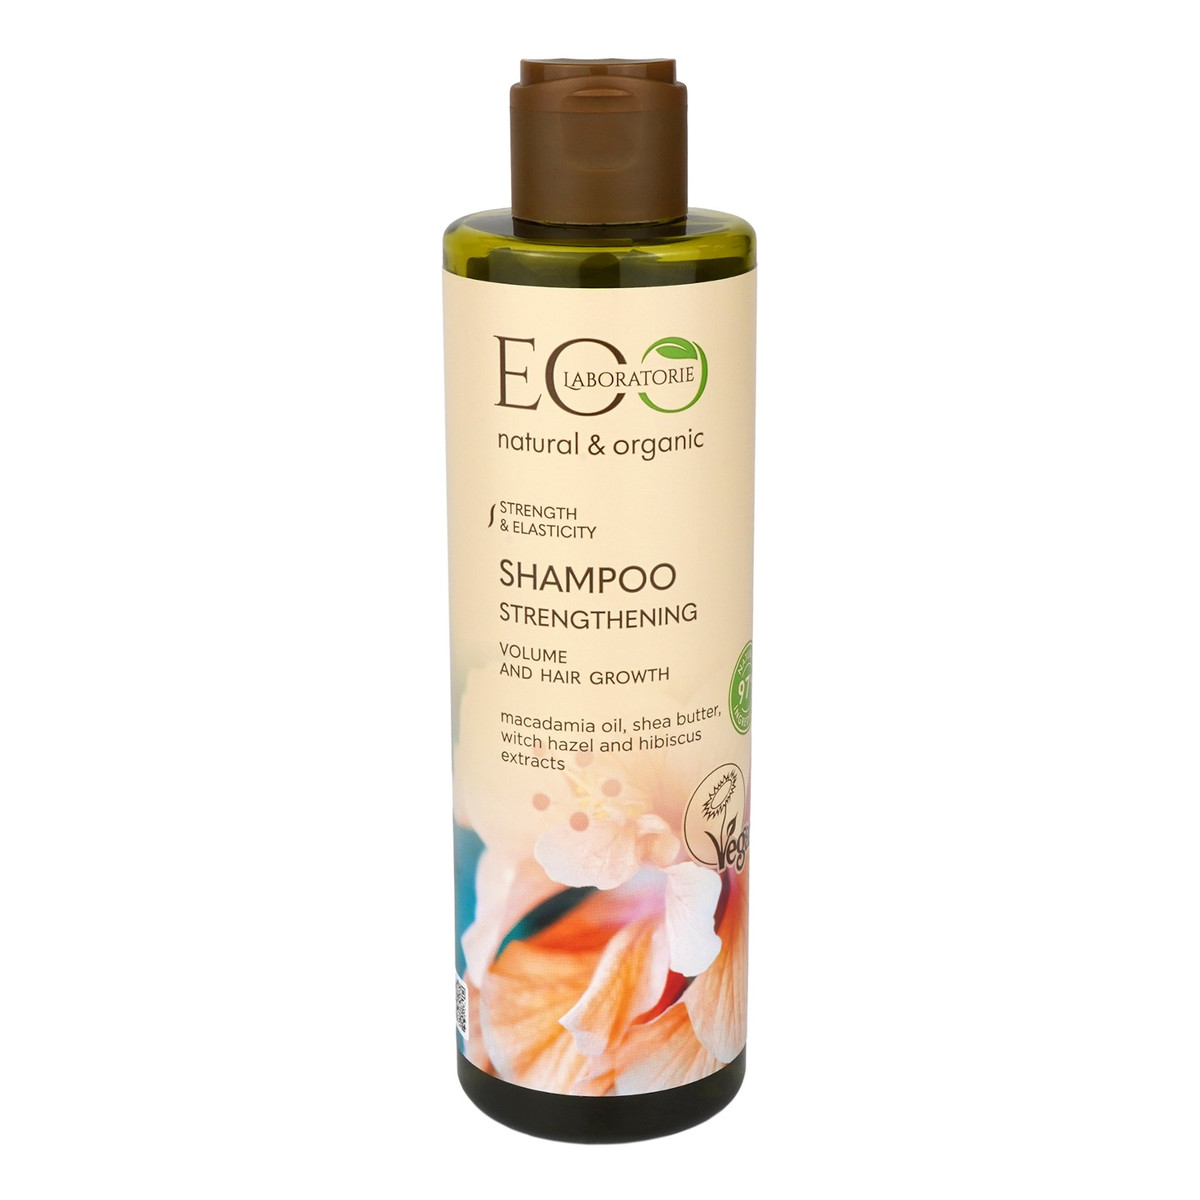 eco laboratorie szampon odzywiajacy wizaz